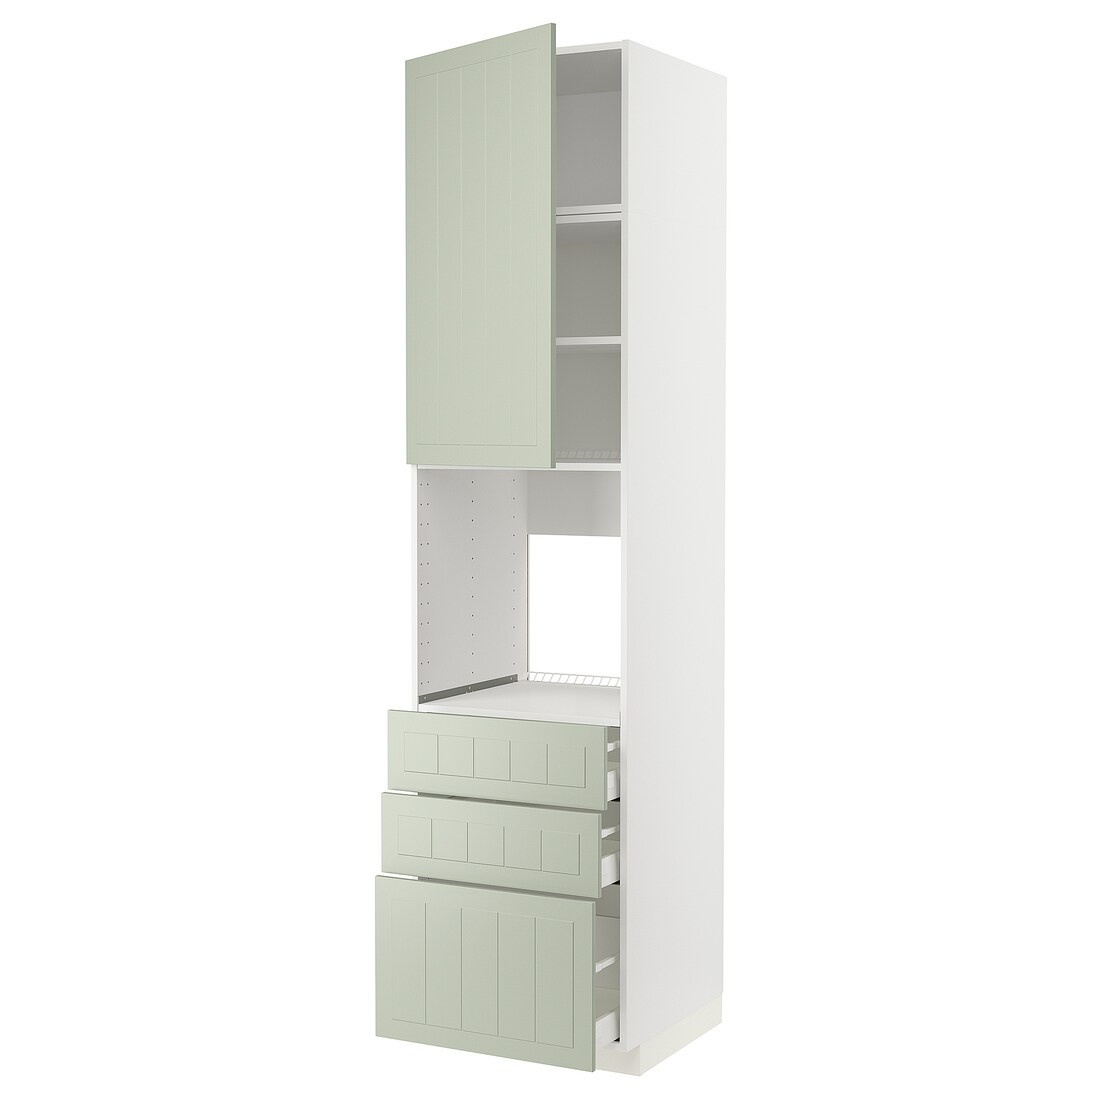 METOD МЕТОД / MAXIMERA МАКСИМЕРА Высокий шкаф для духовки, белый / Stensund светло-зеленый, 60x60x240 см